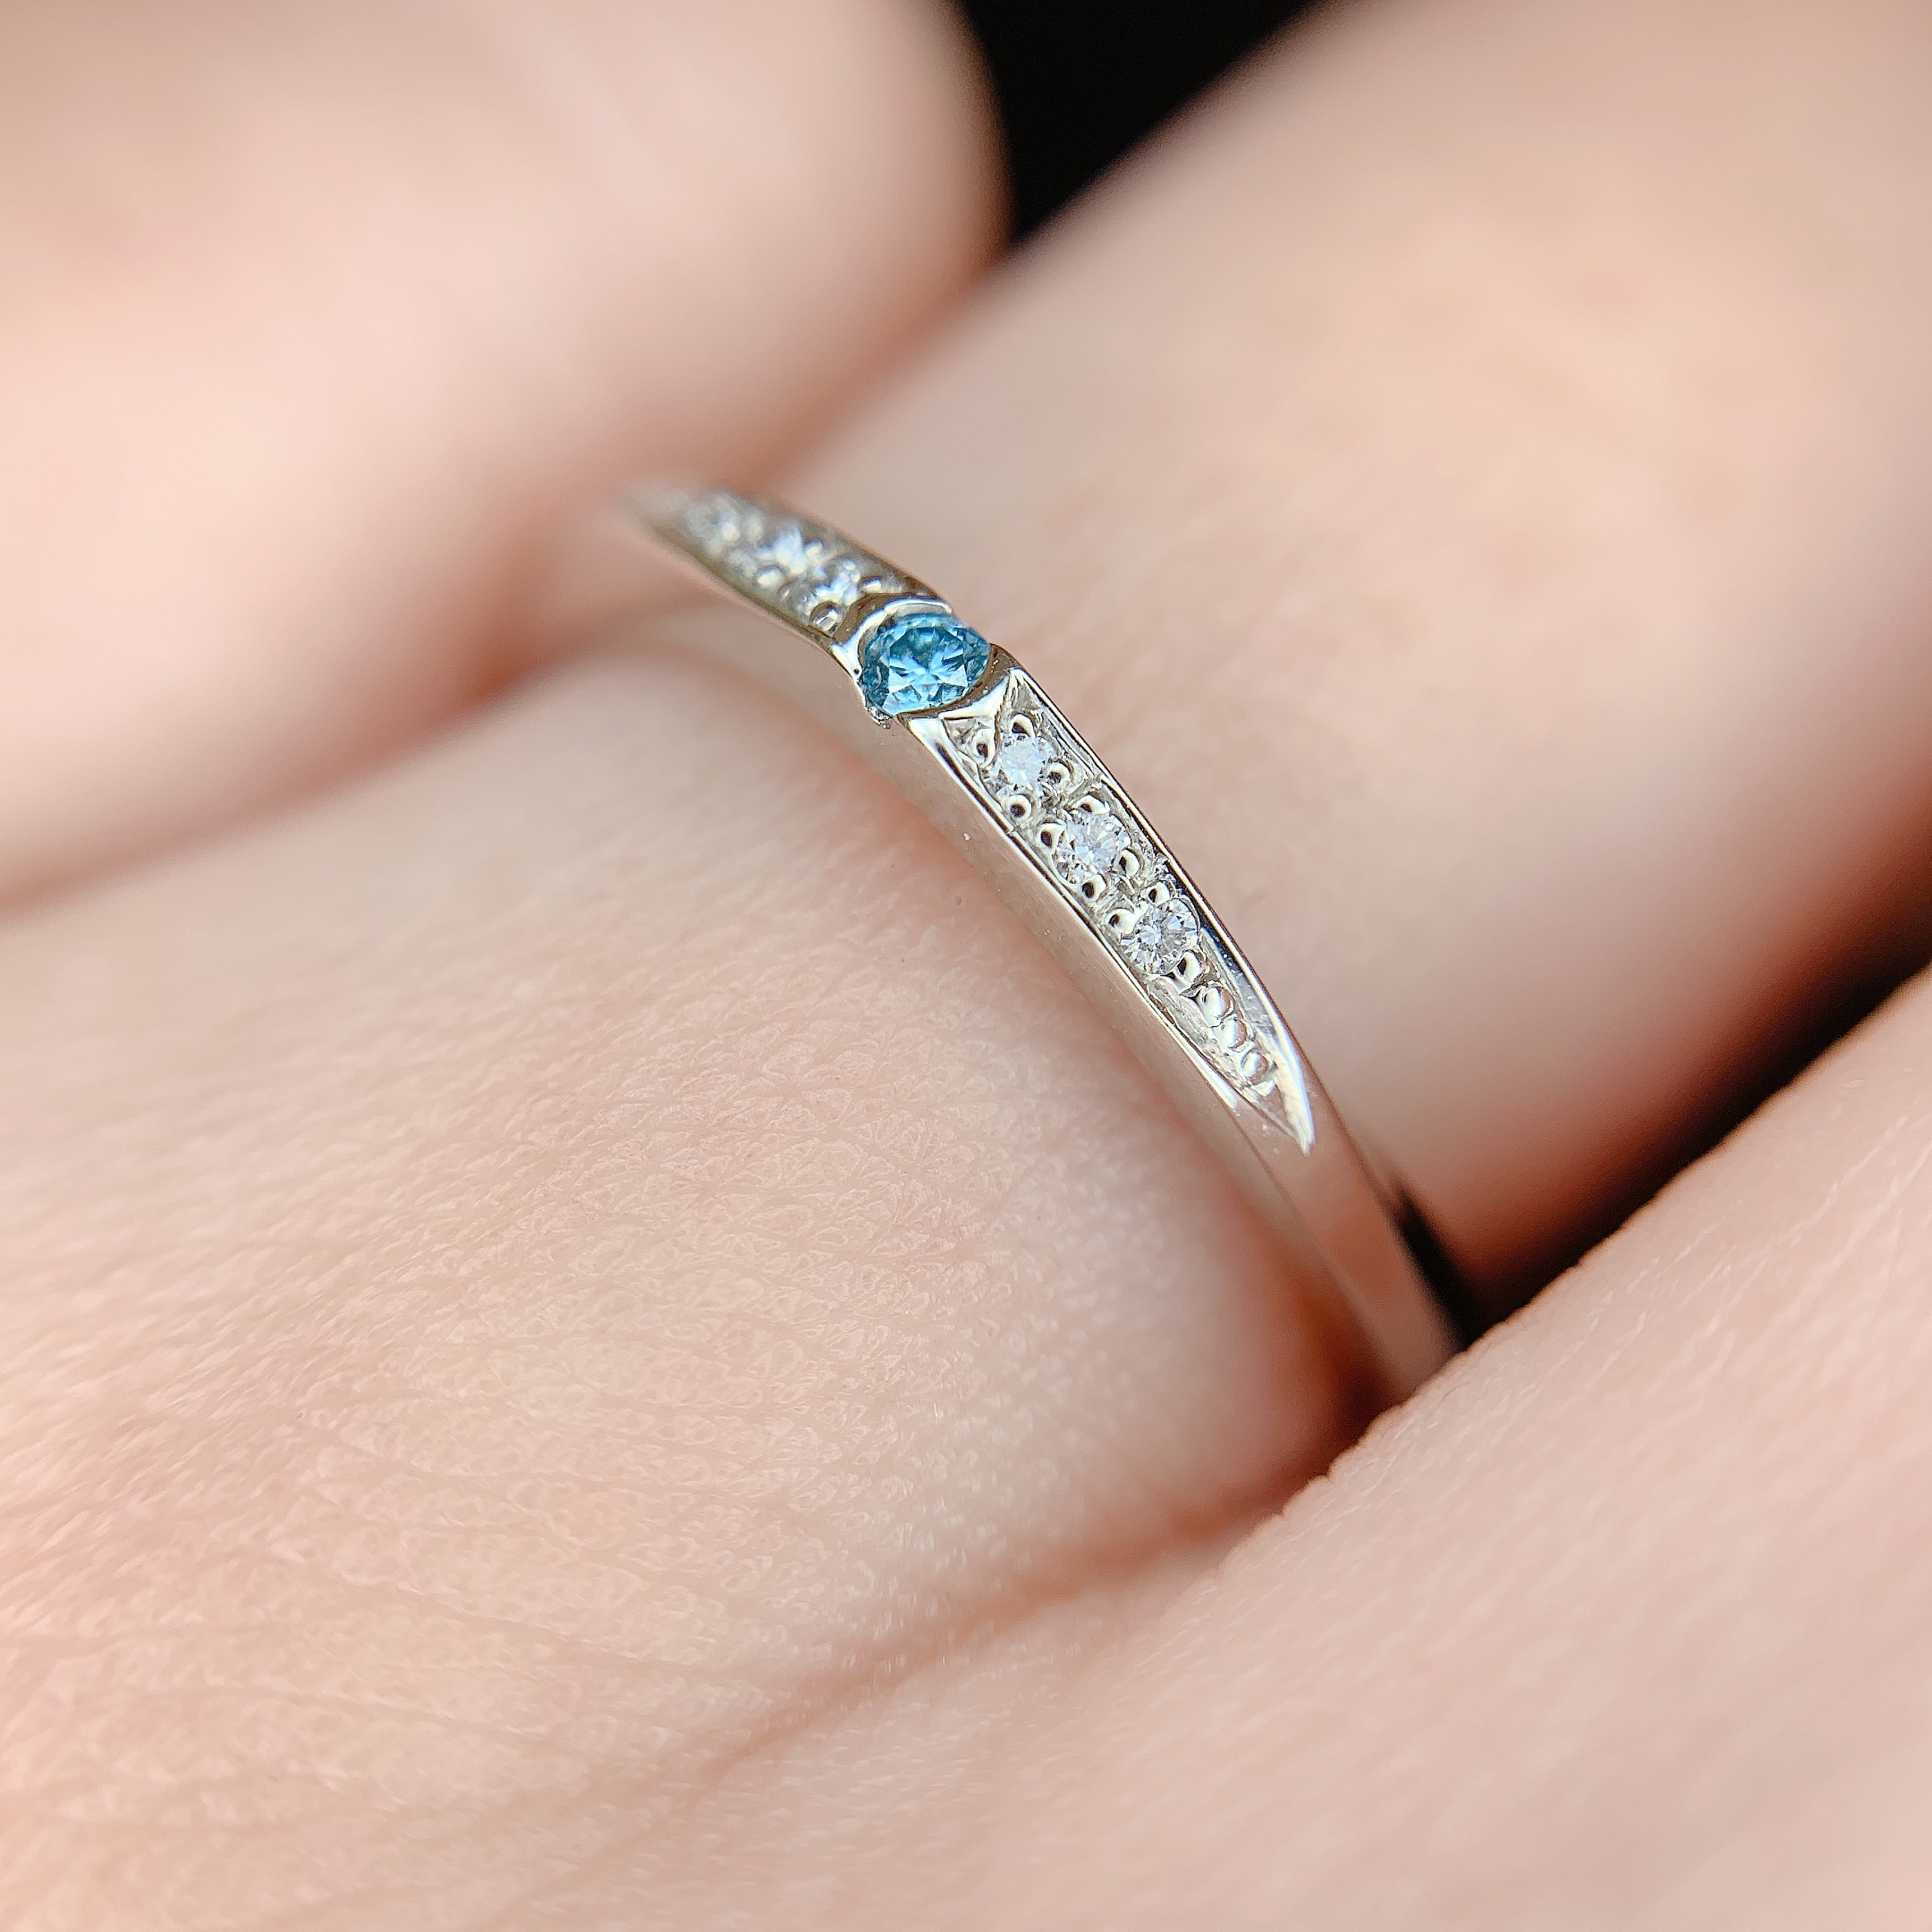 センターに集まったメレダイヤモンドが華やかな結婚指輪。指が細い方におすすめのデザインです。